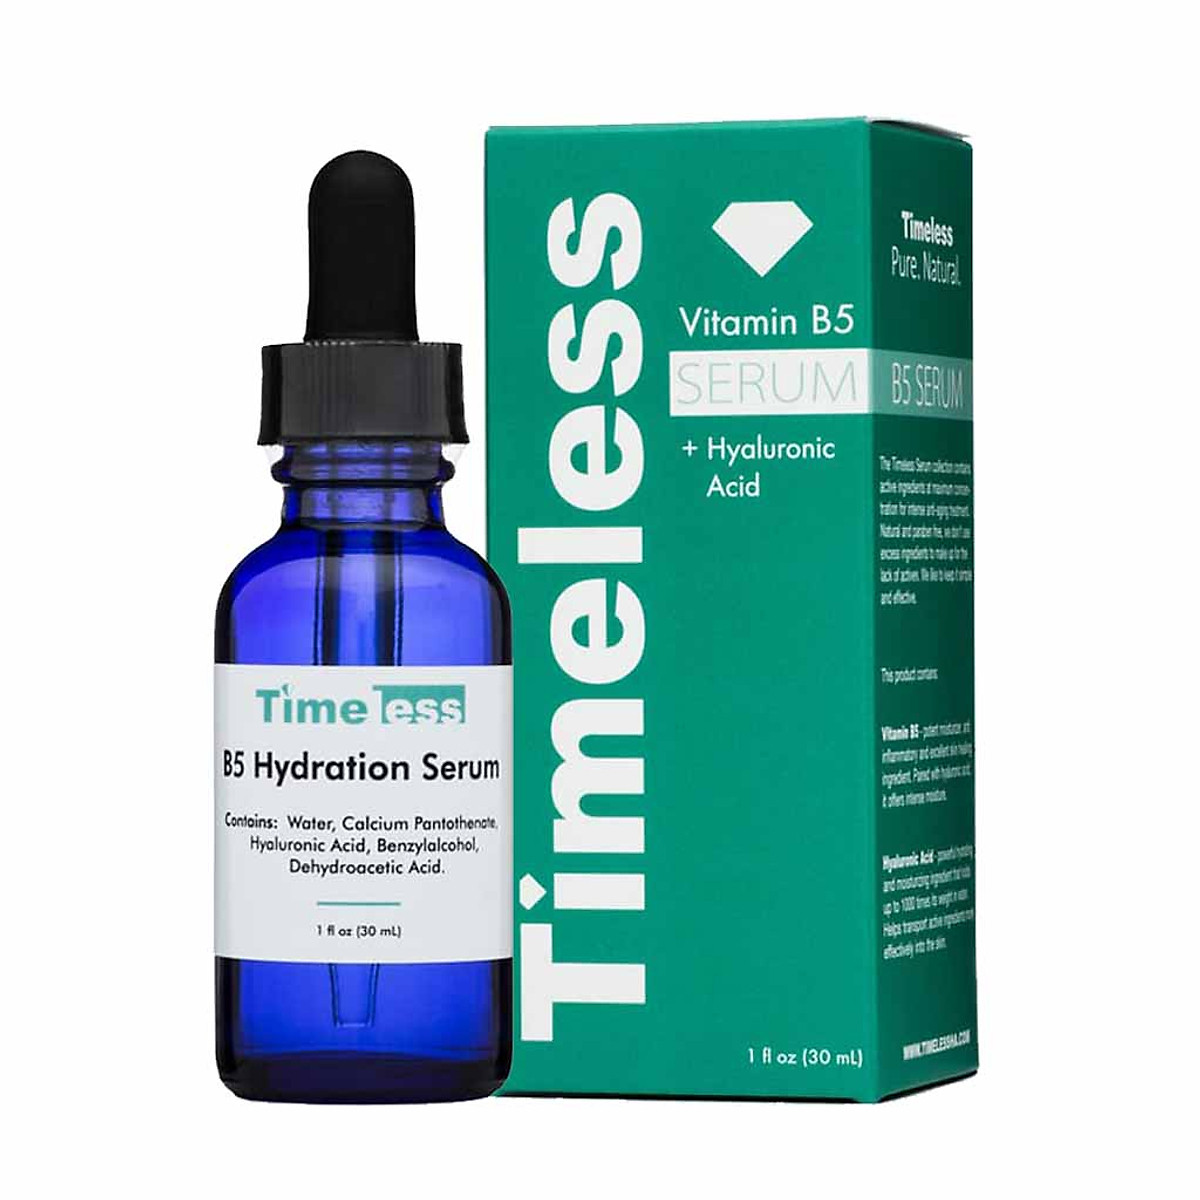 Tinh Chất Cấp Nước & Phục Hồi Da Timeless Vitamin B5 Serum + Hyaluronic Acid 30ml